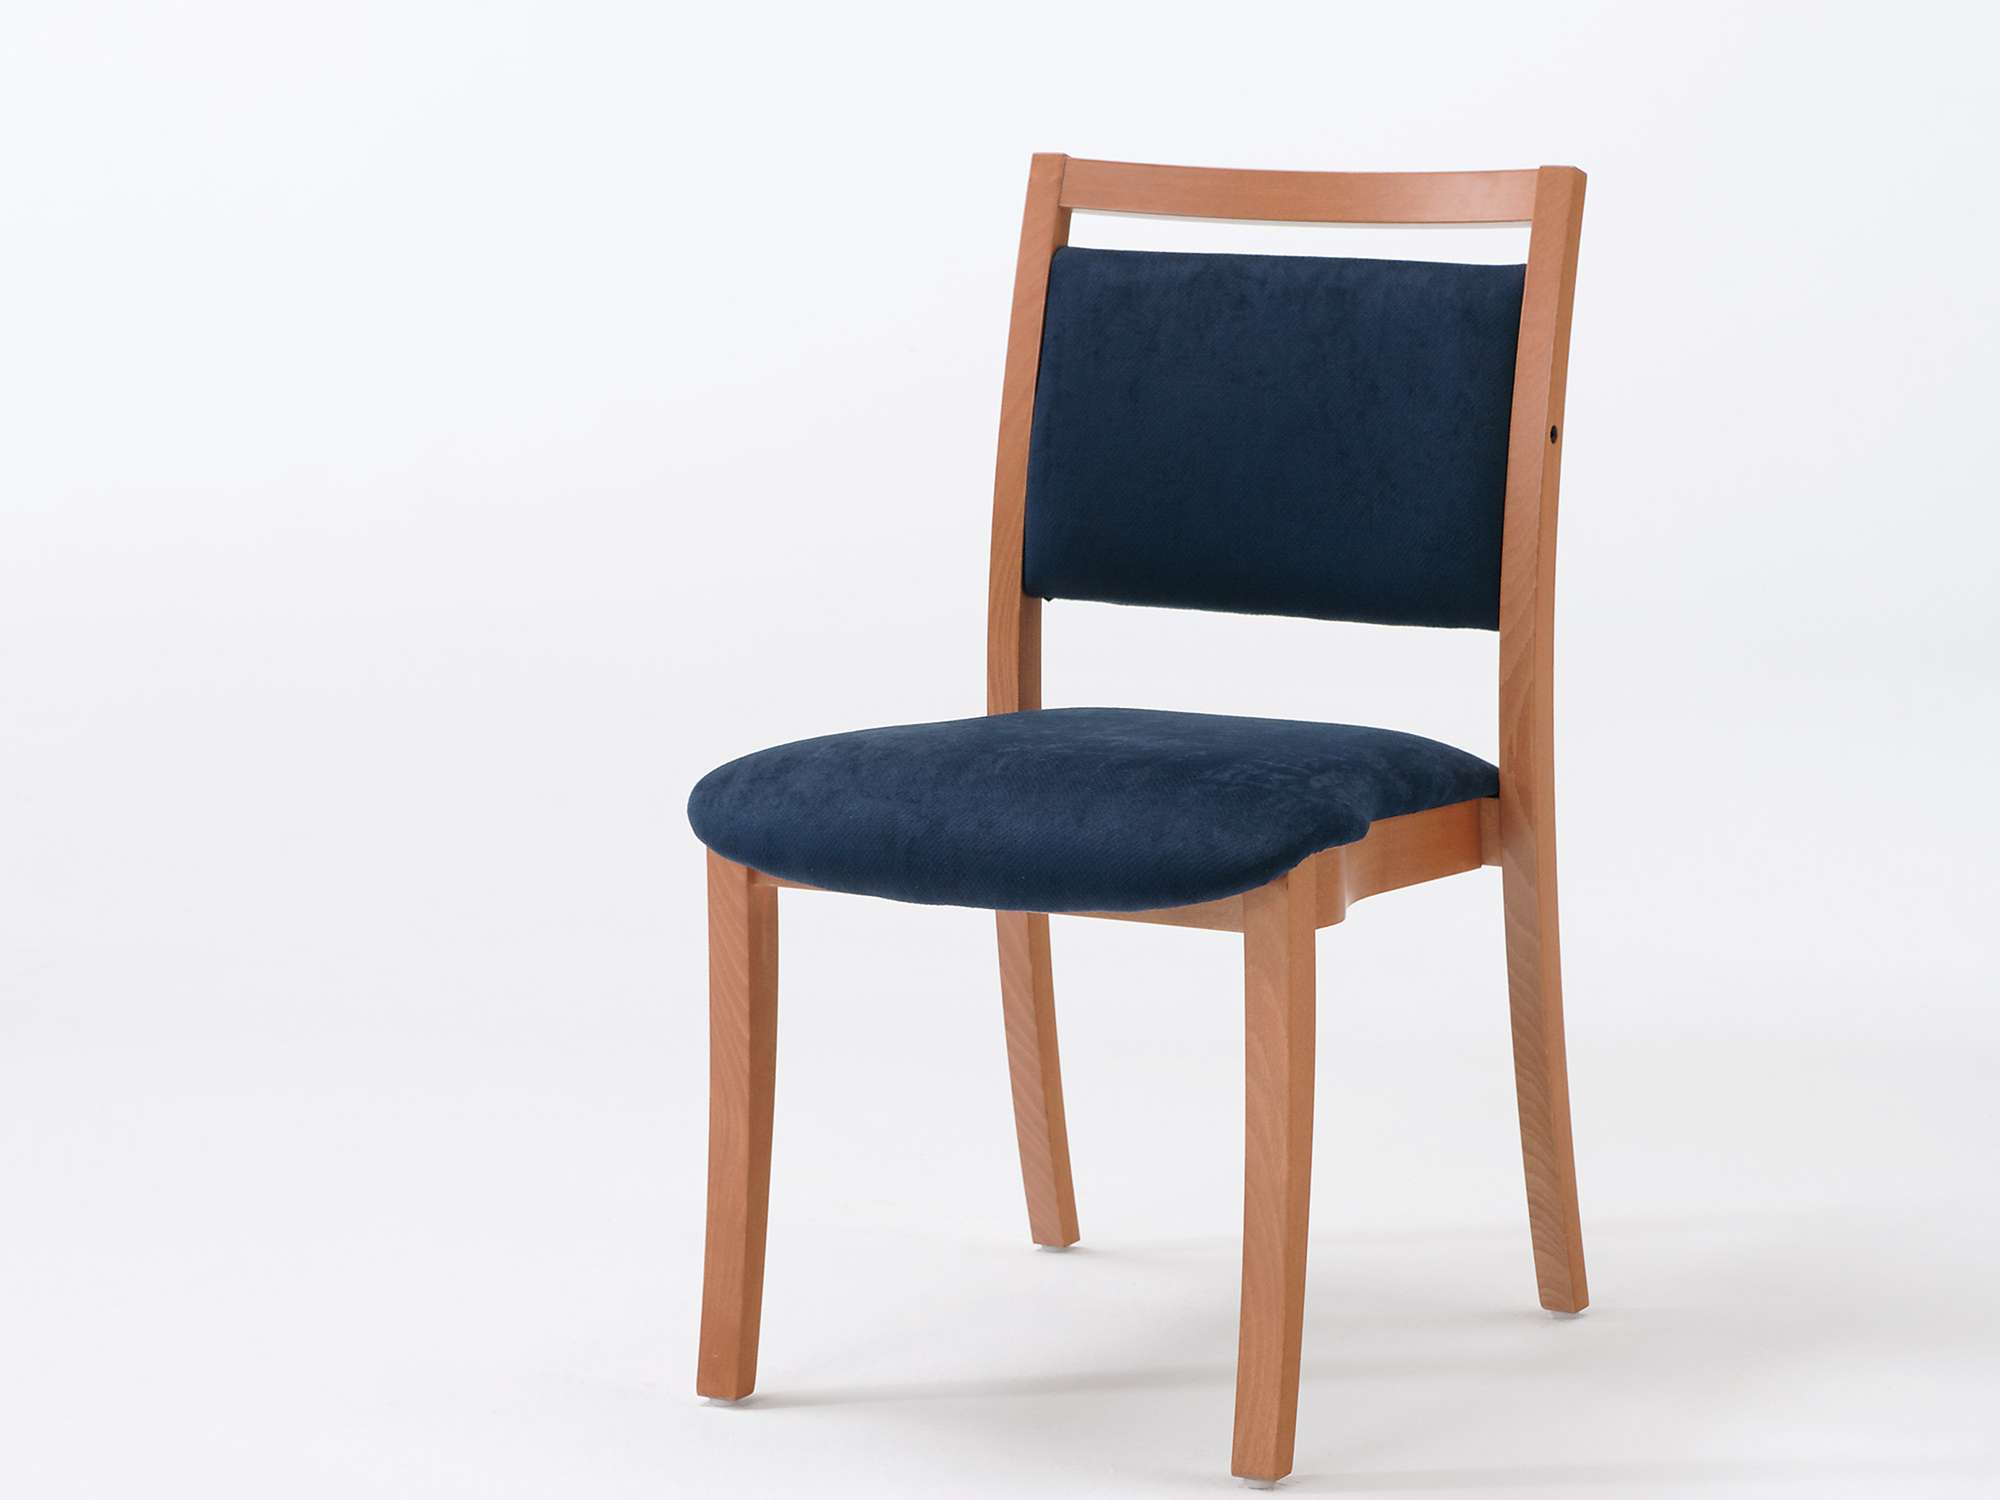 Sedego-tuoli päällekkäin pinottavana ja nostokahvallisena mallina